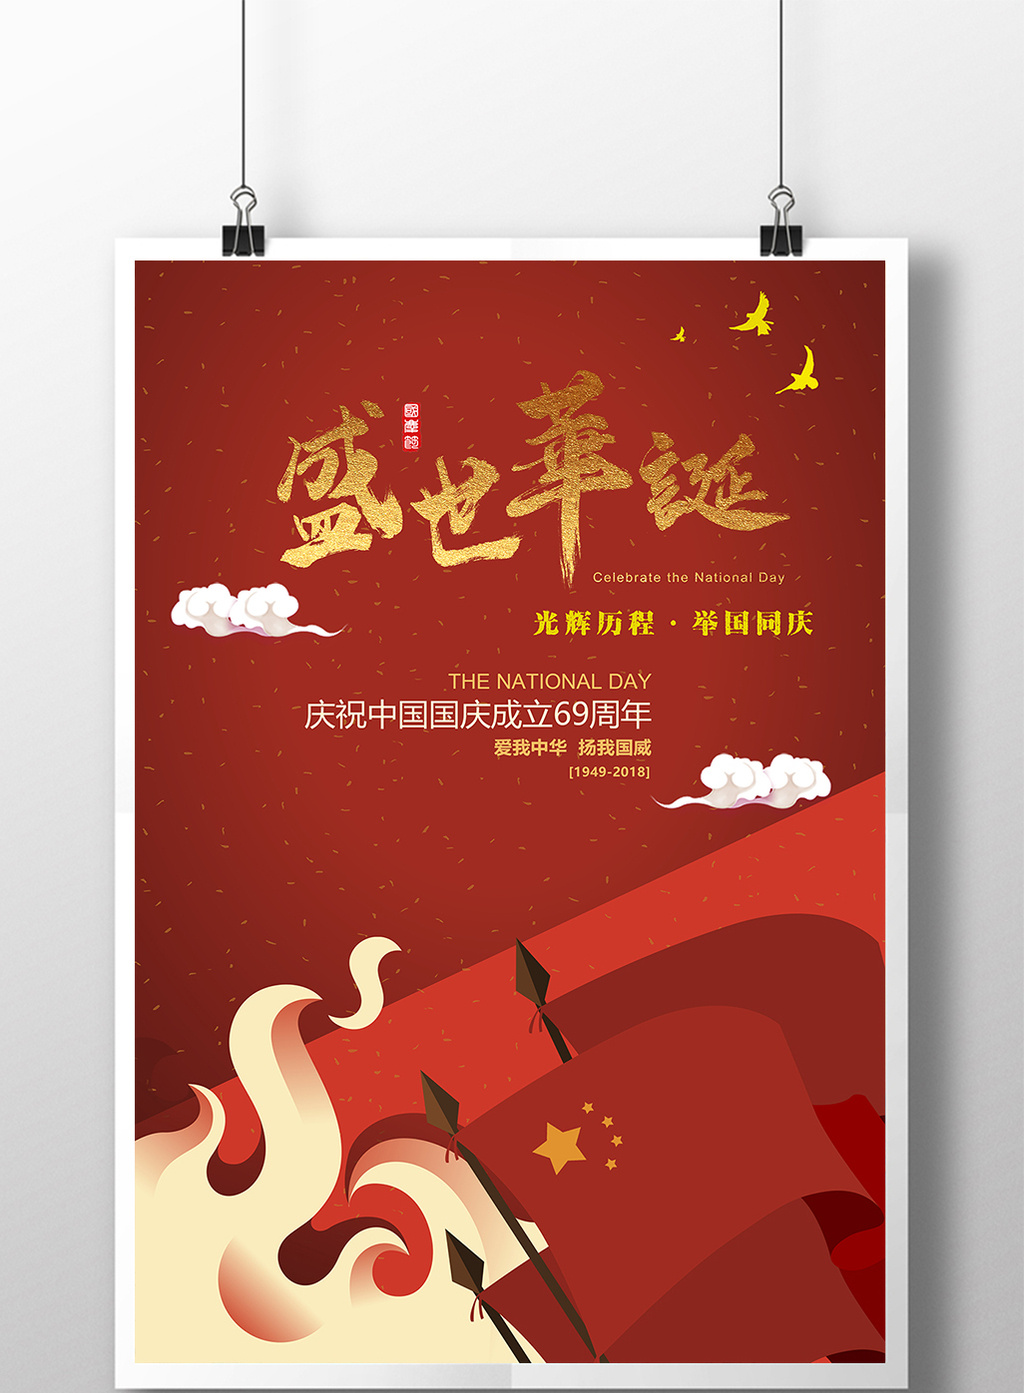 手绘插画红色2018十一国庆节海报素材免费下载,本次作品主题是广告